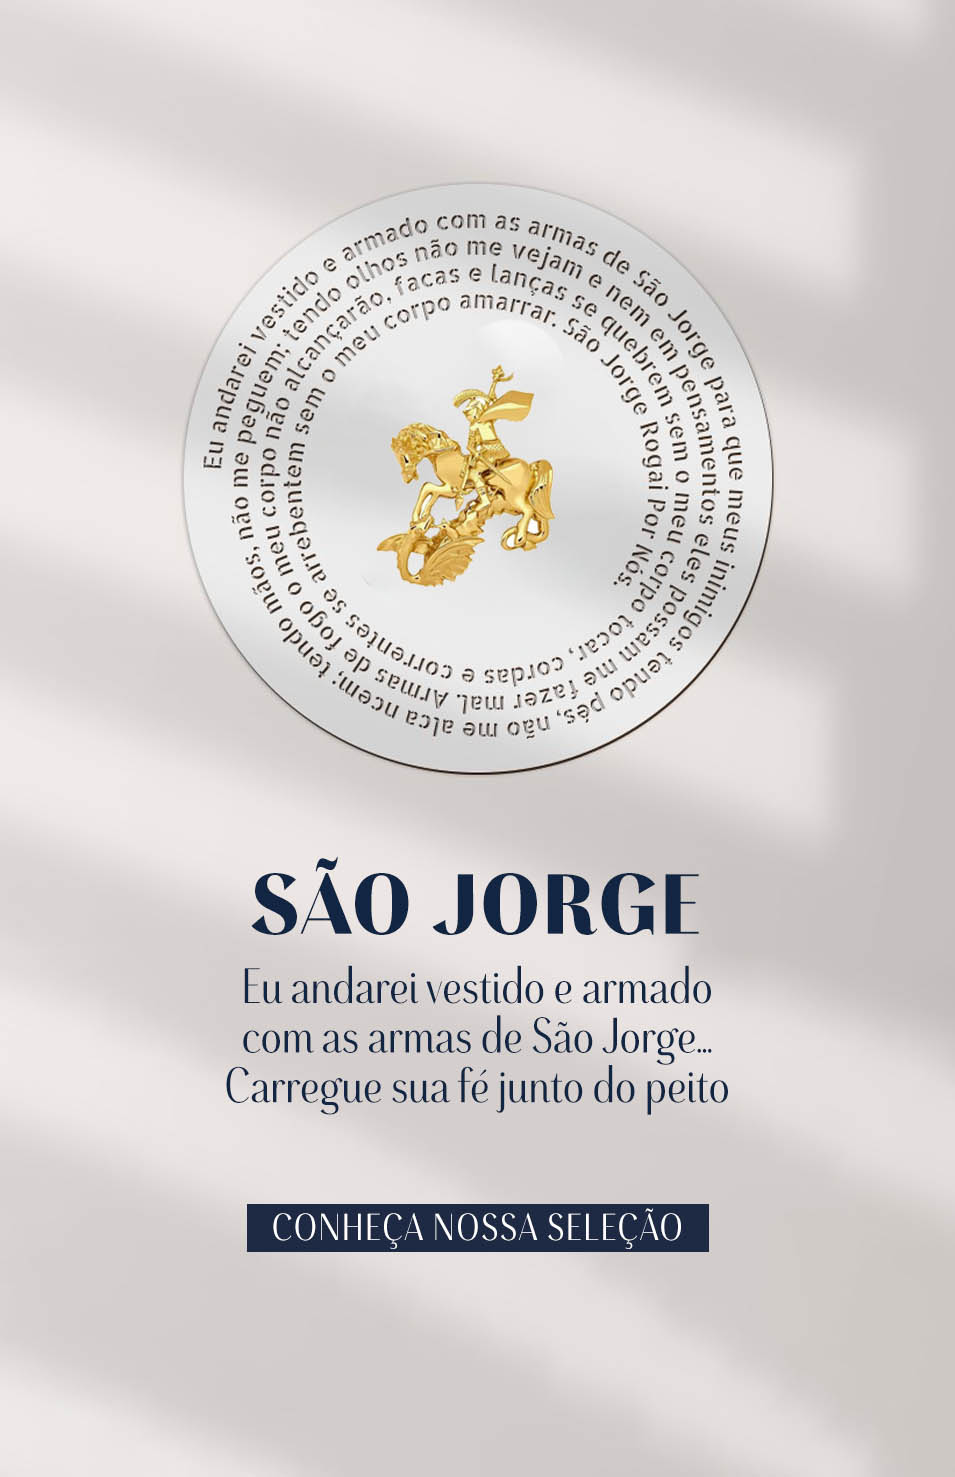 Mobile | São Jorge | 180424